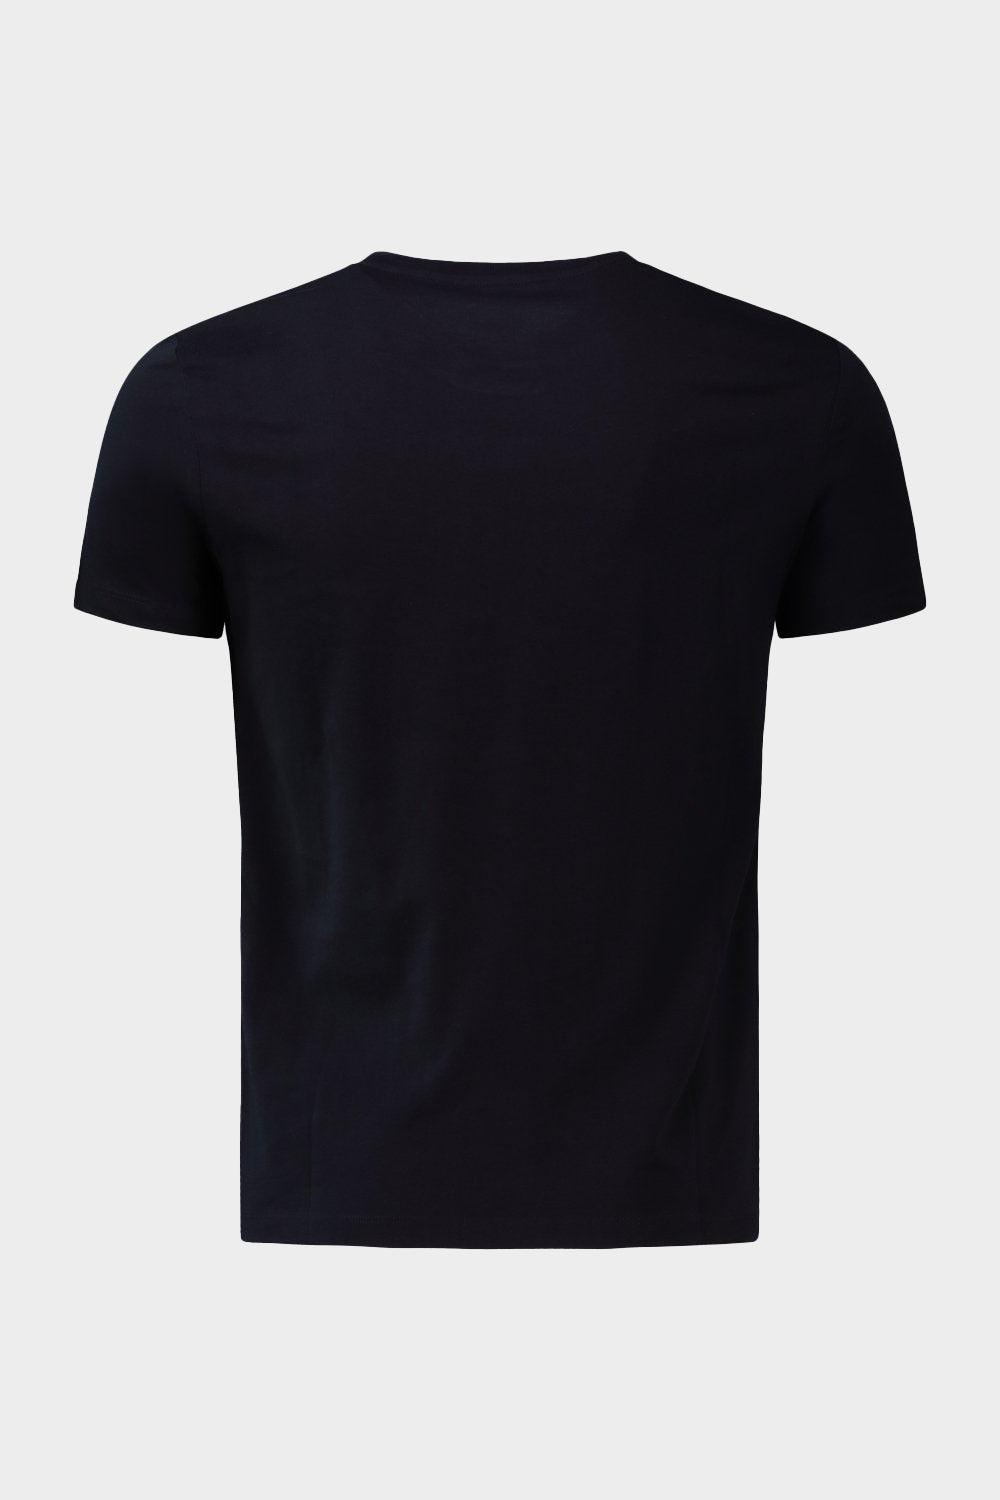 חולצת טי שירט לגברים לוגו גדול MARC O'POLO Vendome online | ונדום .